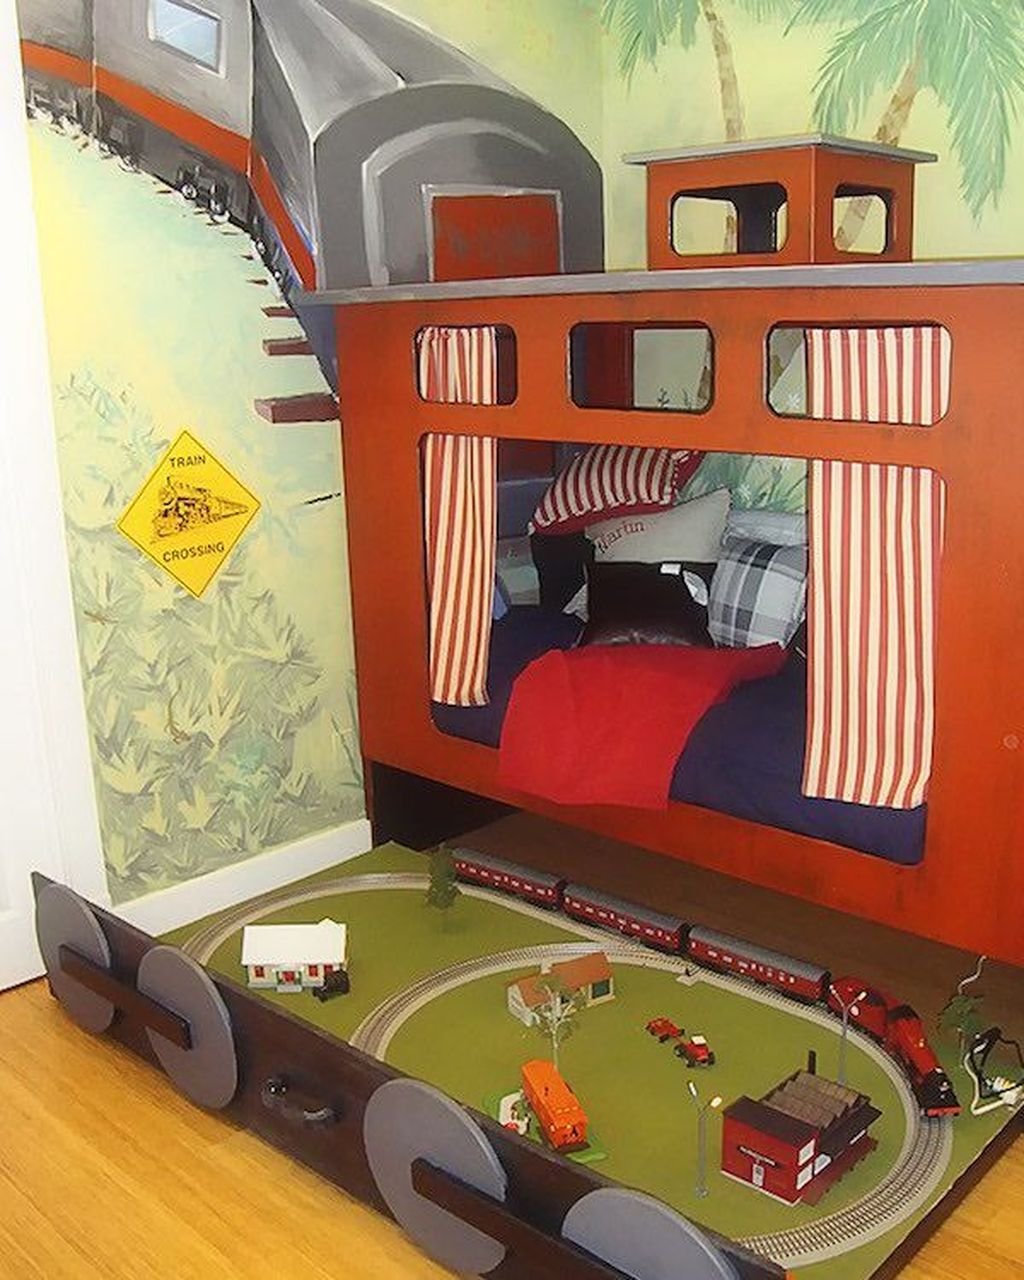 Купить поезд мальчику. Кровать в виде поезда. Детская кровать поезд. Детские комнаты в виде поезда. Кровать в стиле поезда детская.